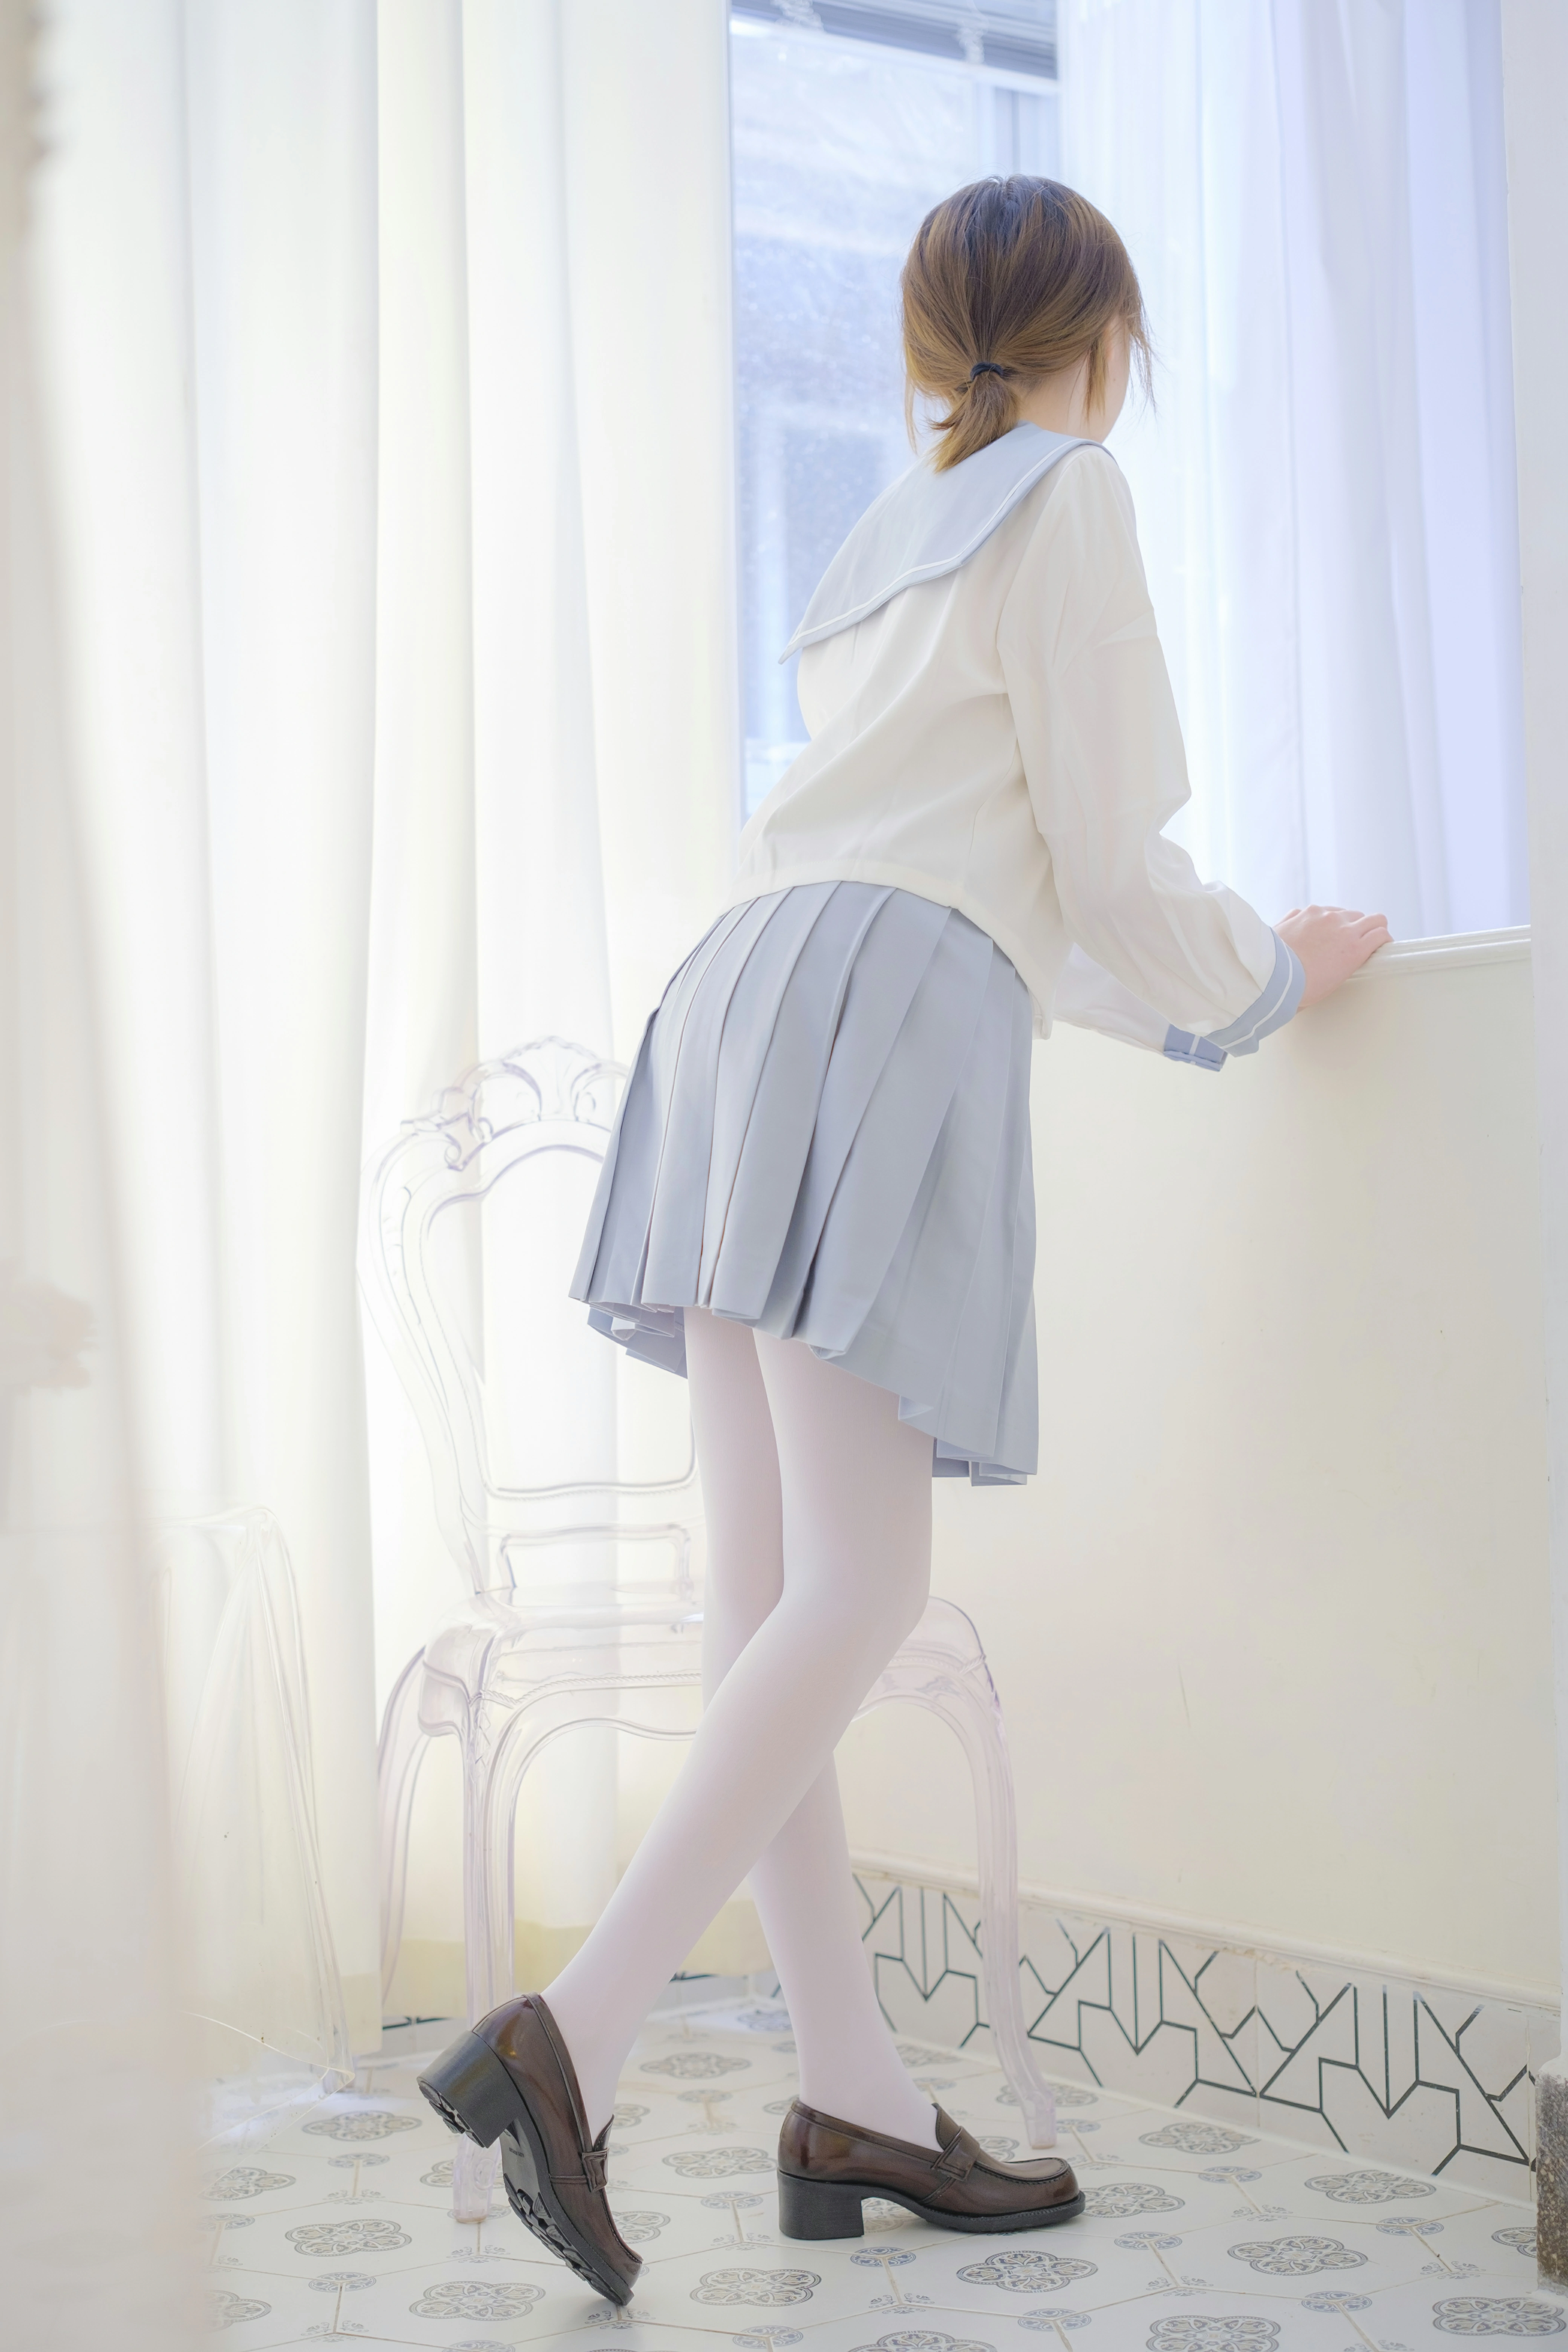 [森萝财团]内部VIP系列 微风-04 少女萝莉小学妹 白色JK制服与蓝色短裙加白色丝袜美腿私房写真集,0019